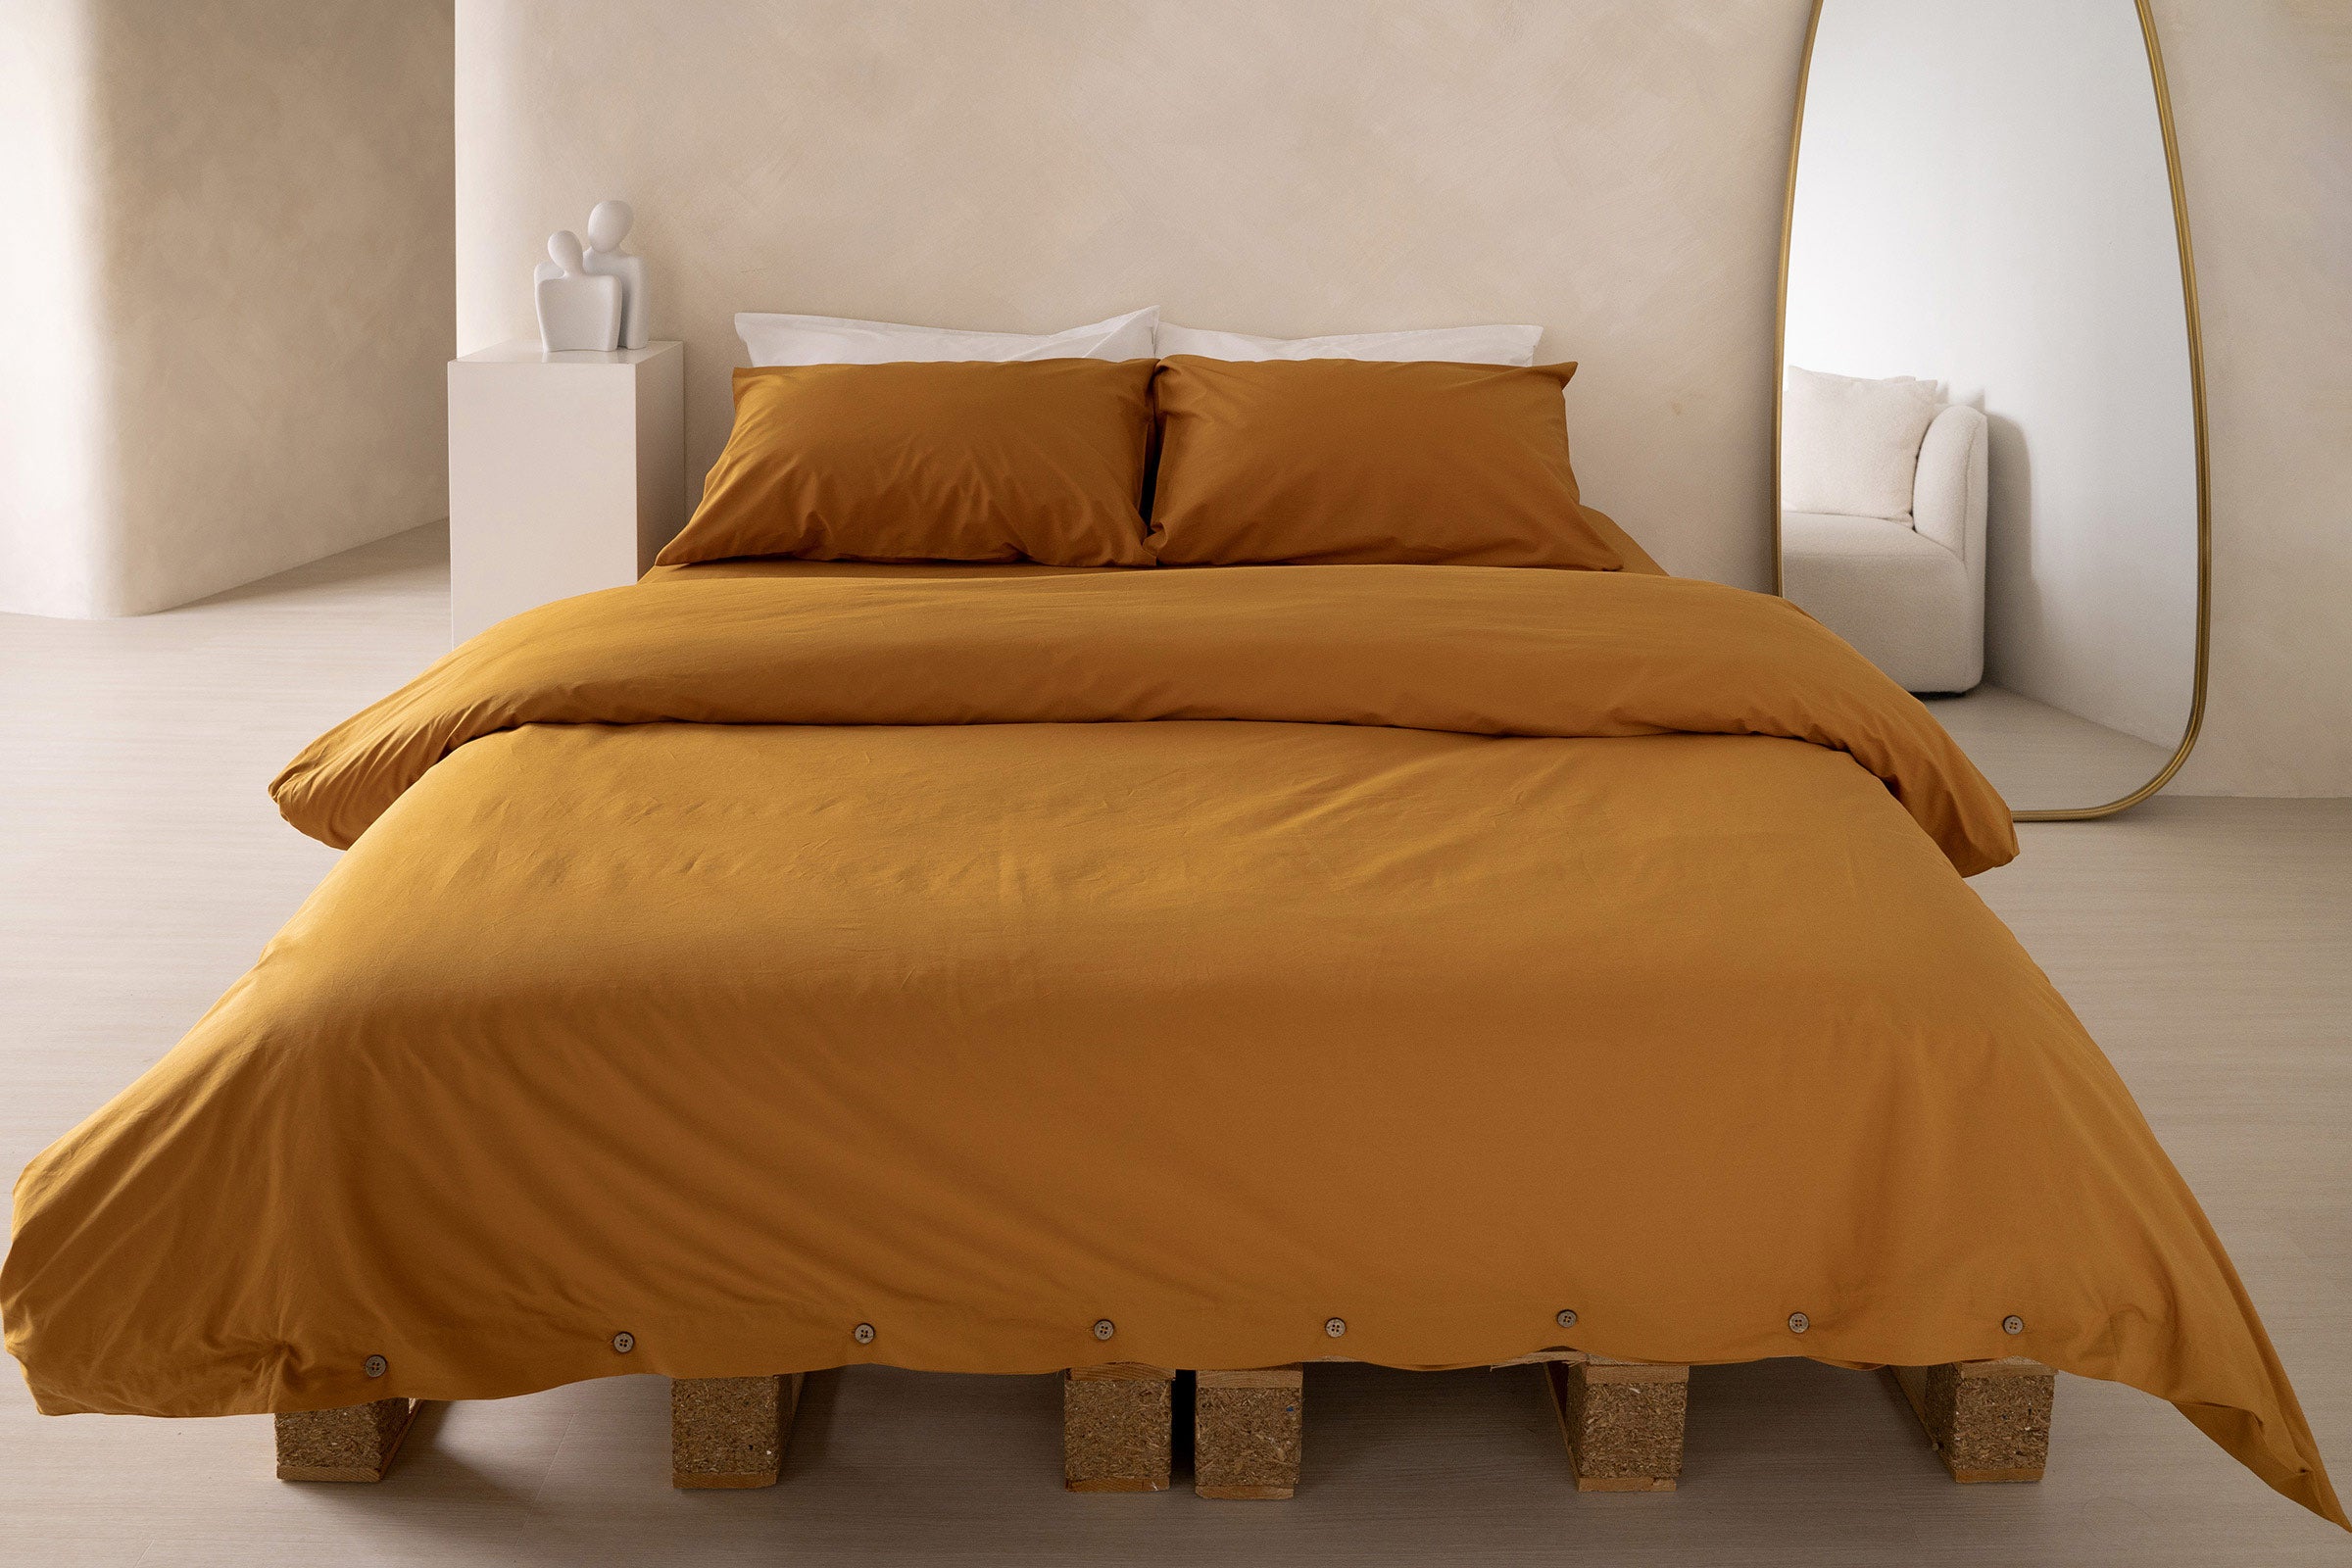 crisp-mustard-duvet-cover-fitted-sheet-pillowcase-pair-white-pillowcase-pair-by-sojao.jpg